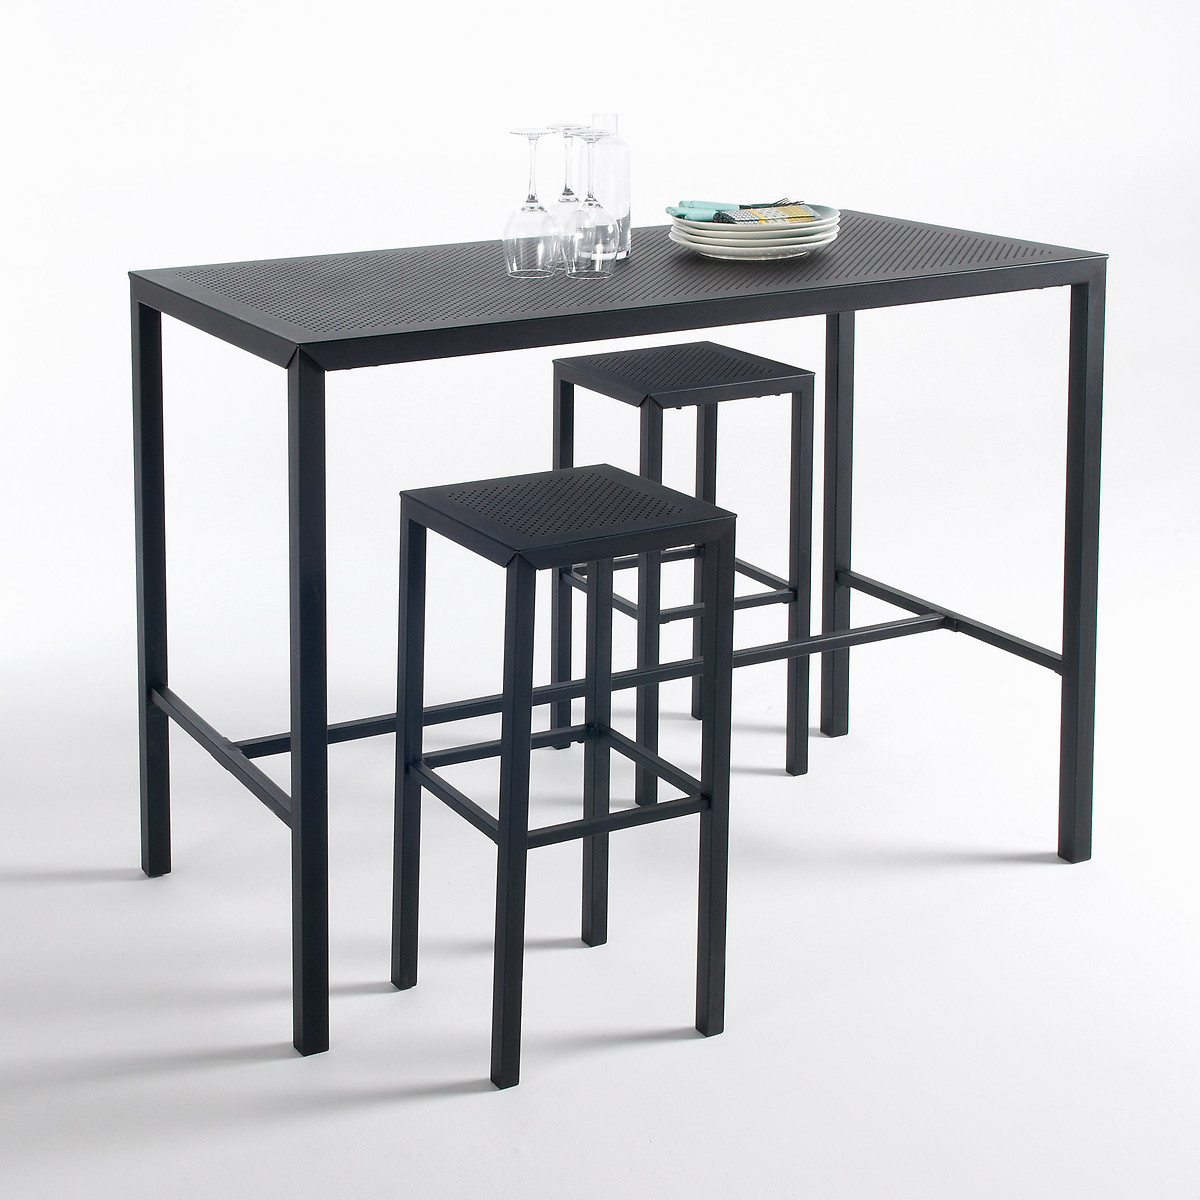 Столик высокий из перфорированного металла Choe единый размер черный столик высокий из перфорированного металла choe единый размер черный